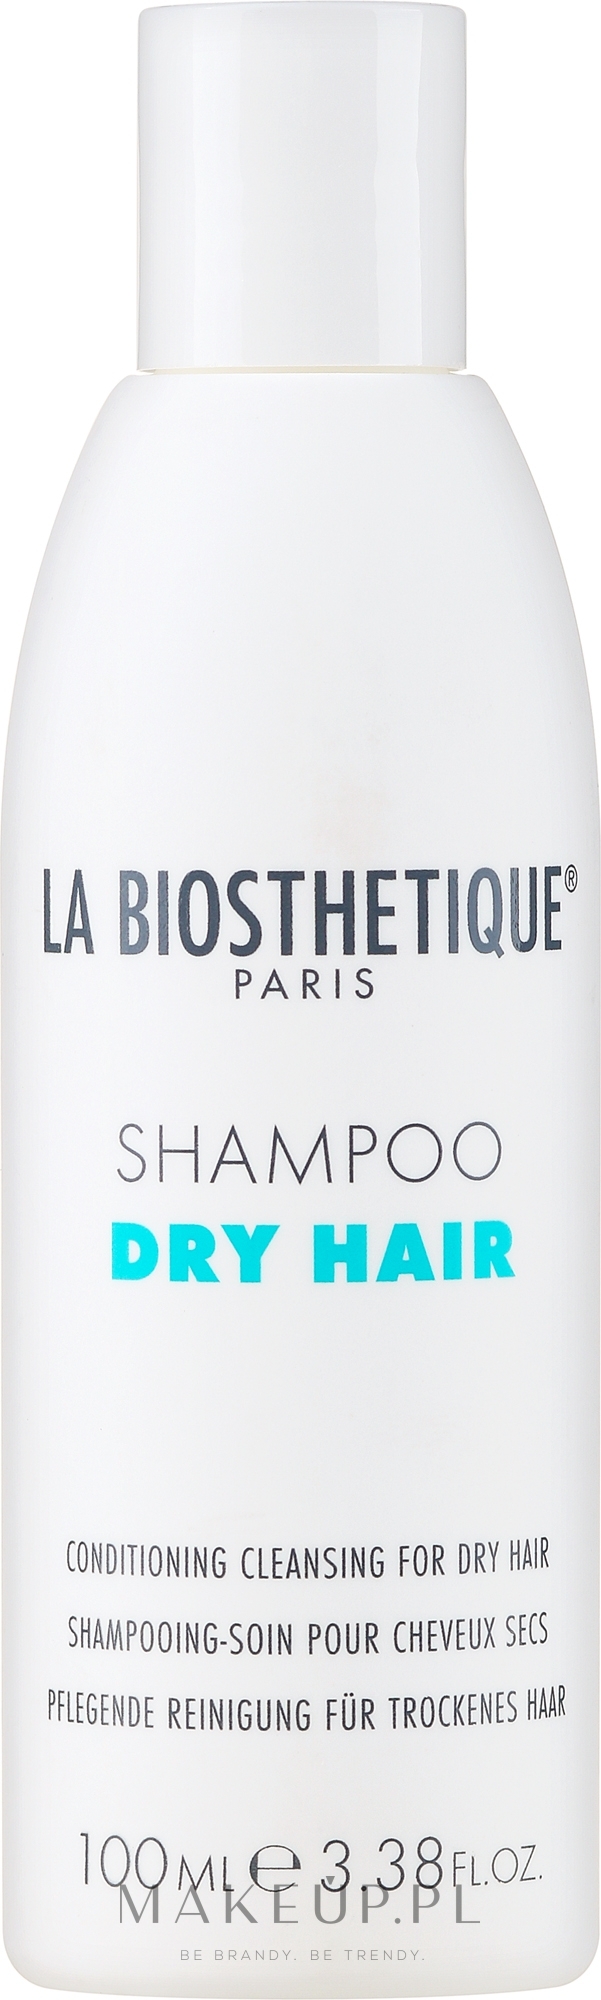 szampon do włosów hair dry la biosthetique